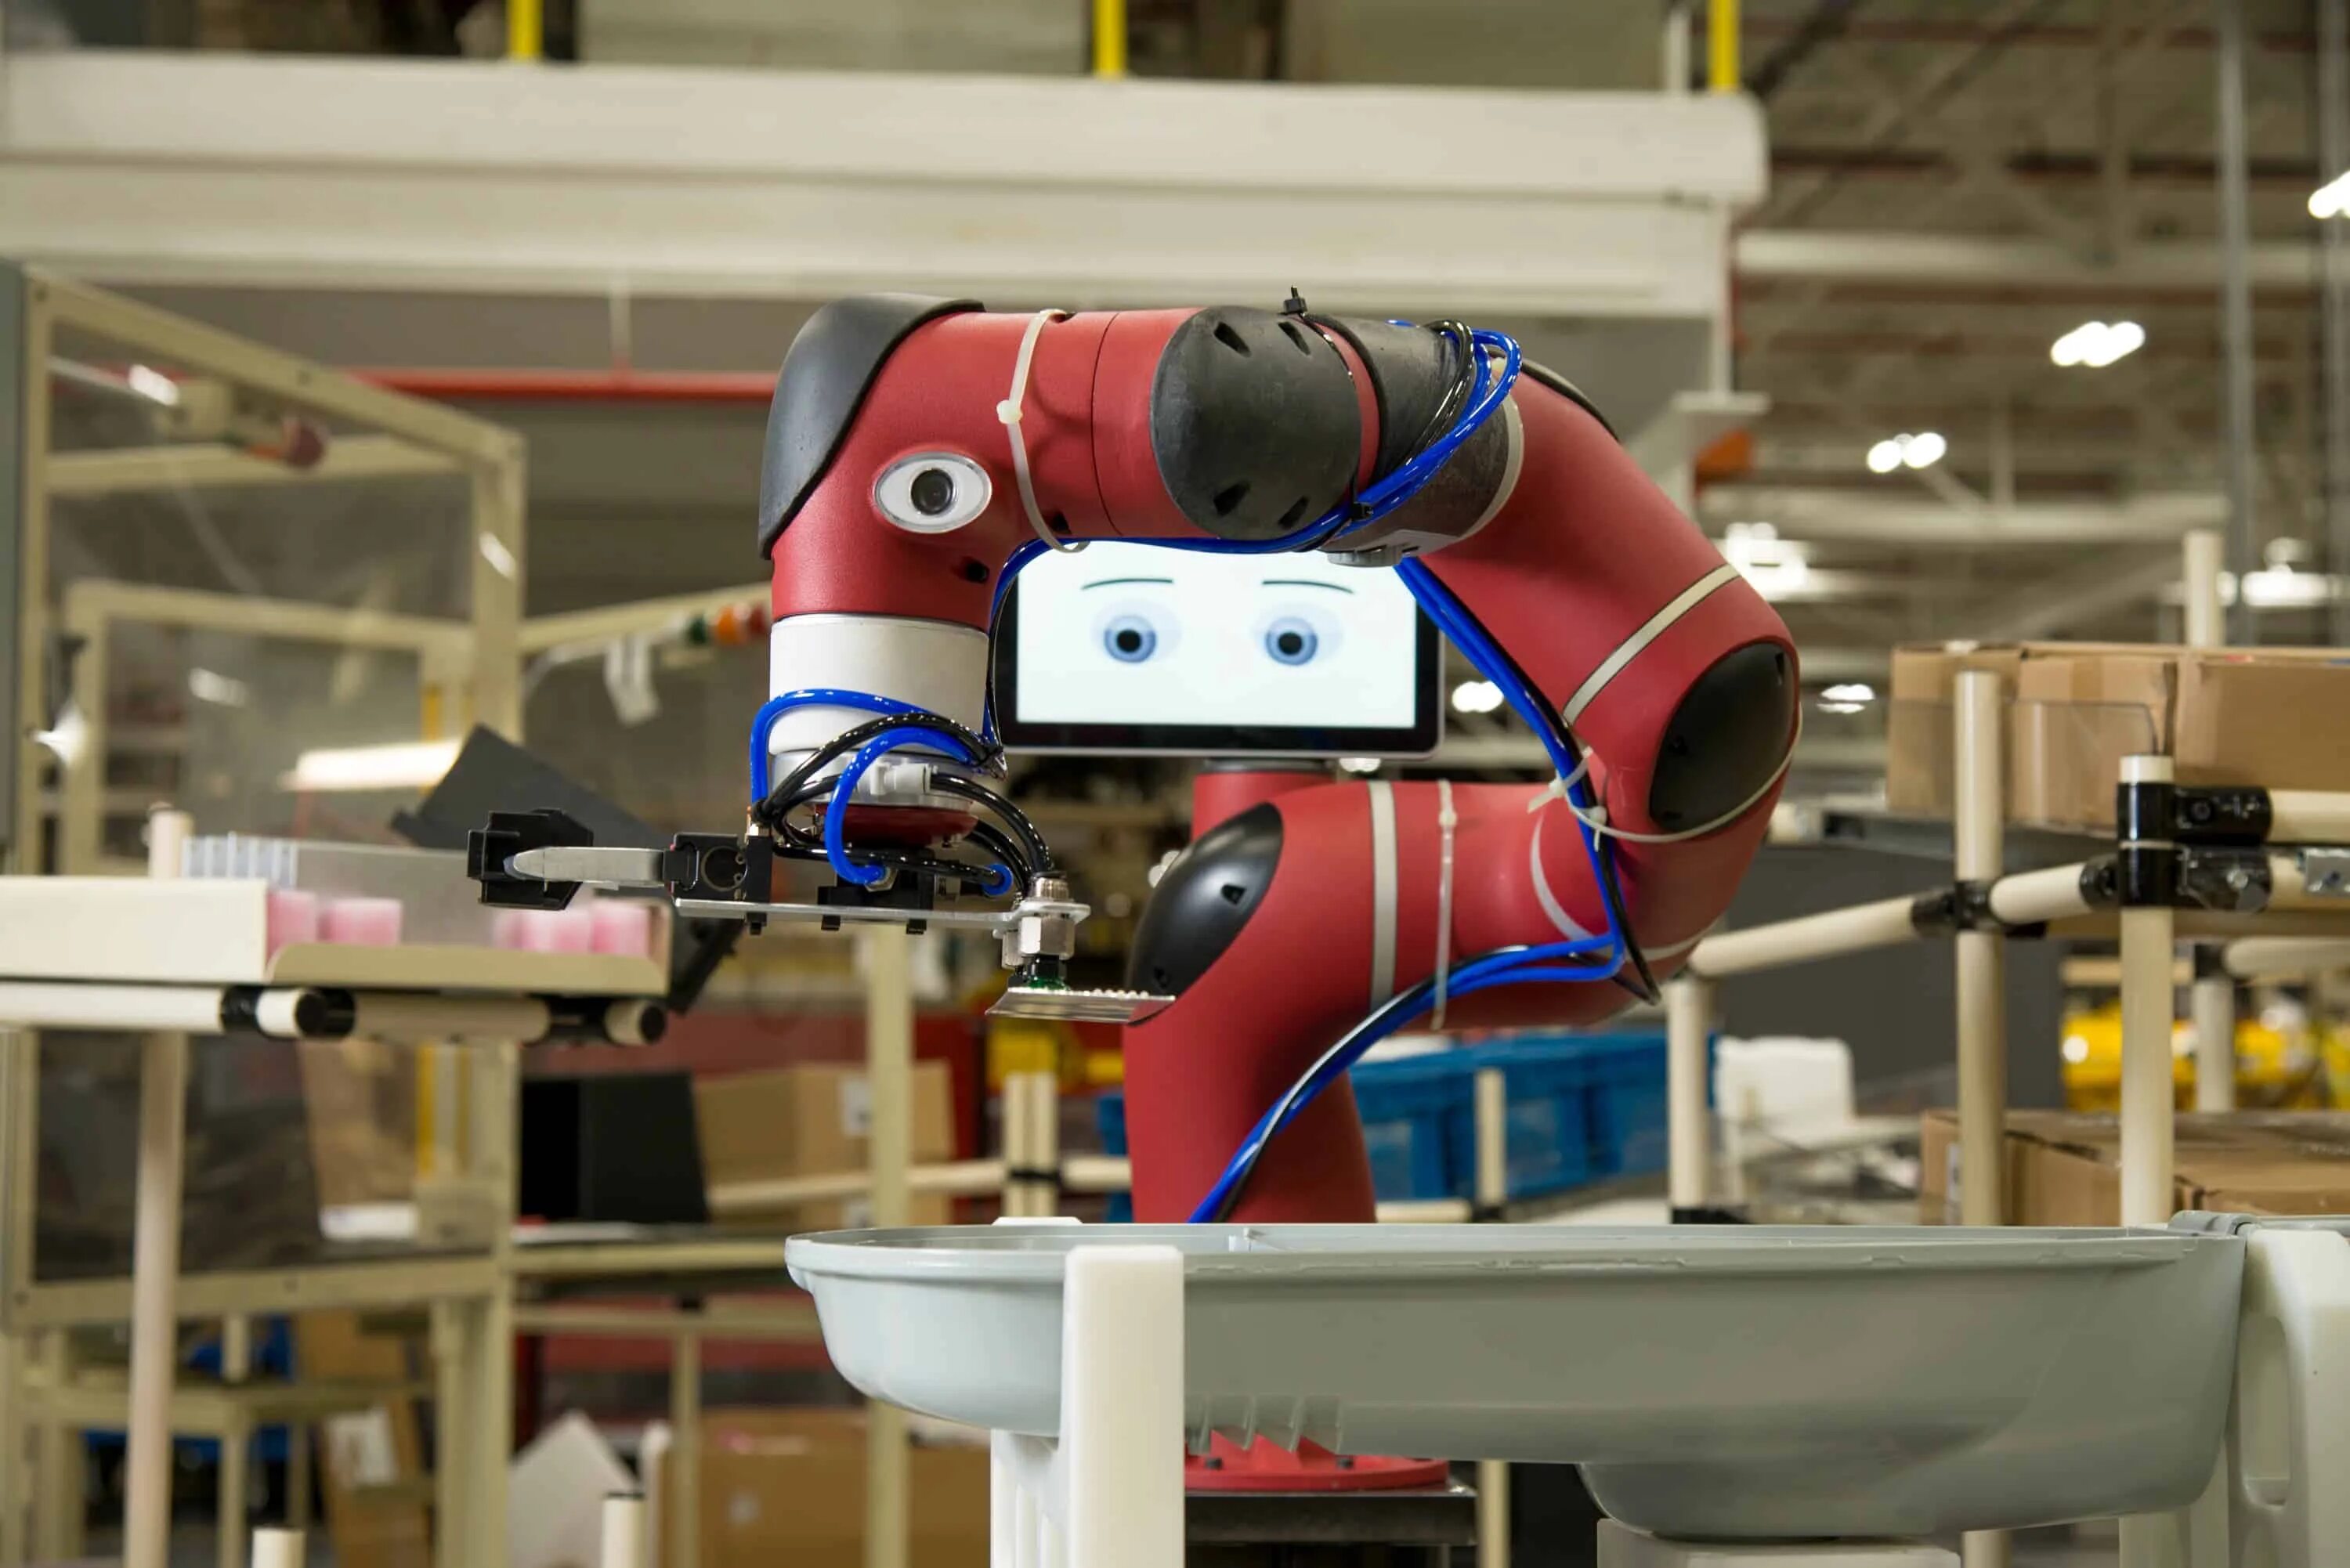 Sawyer робот. Роботы второго поколения. Промышленные роботы 2 поколения. Промышленные роботы первого поколения. Generation robot